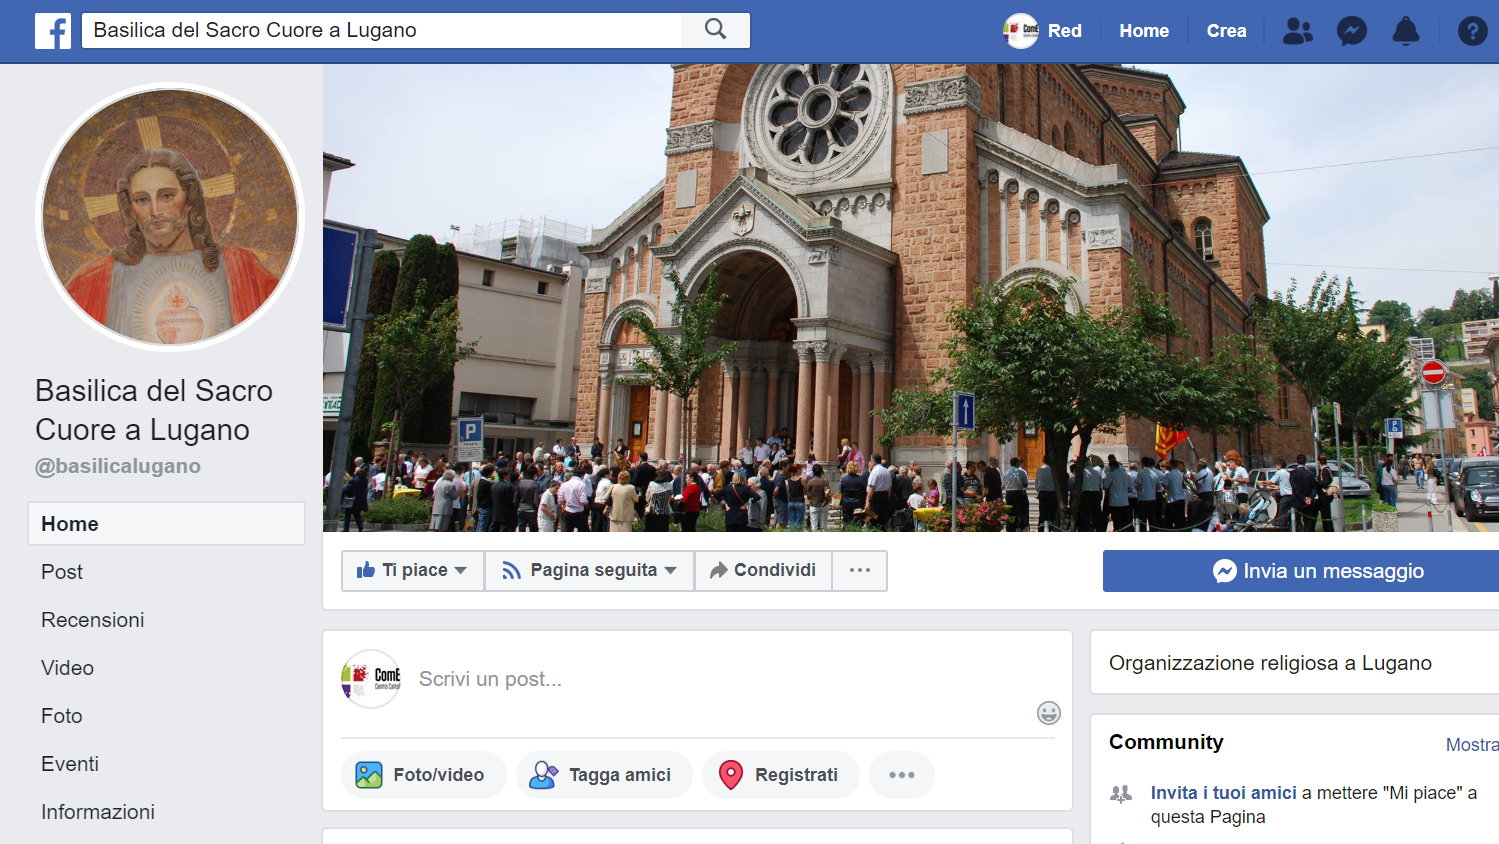 La pagina Facebook della parrocchia del Sacro Cuore di Lugano.